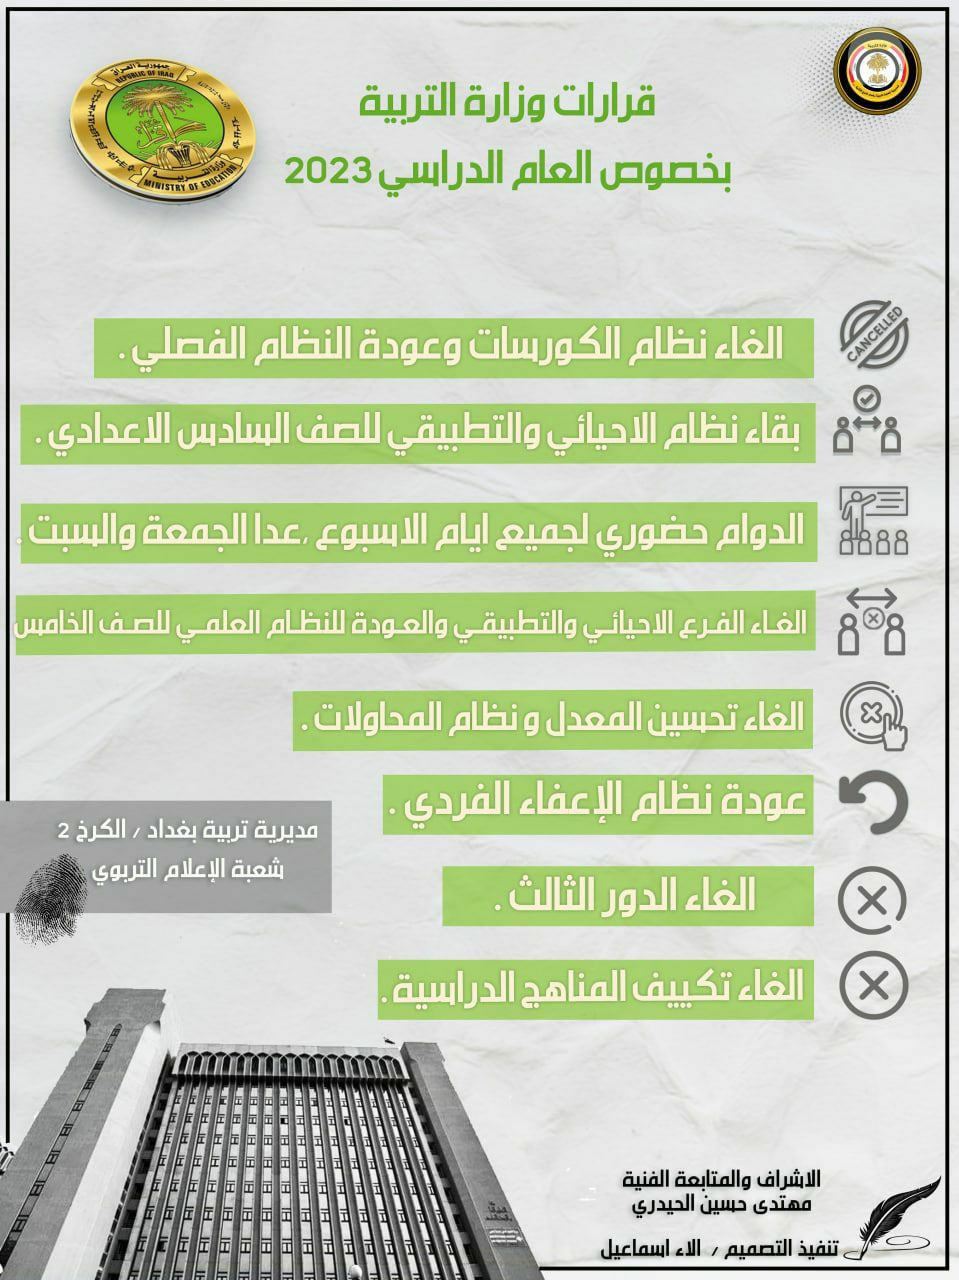 متغيرات الدراسه في عام 2022 - 2023 من مديرية تربية بغداد / الكرخ الثانيه -2 شعبة الاعلام التربوي